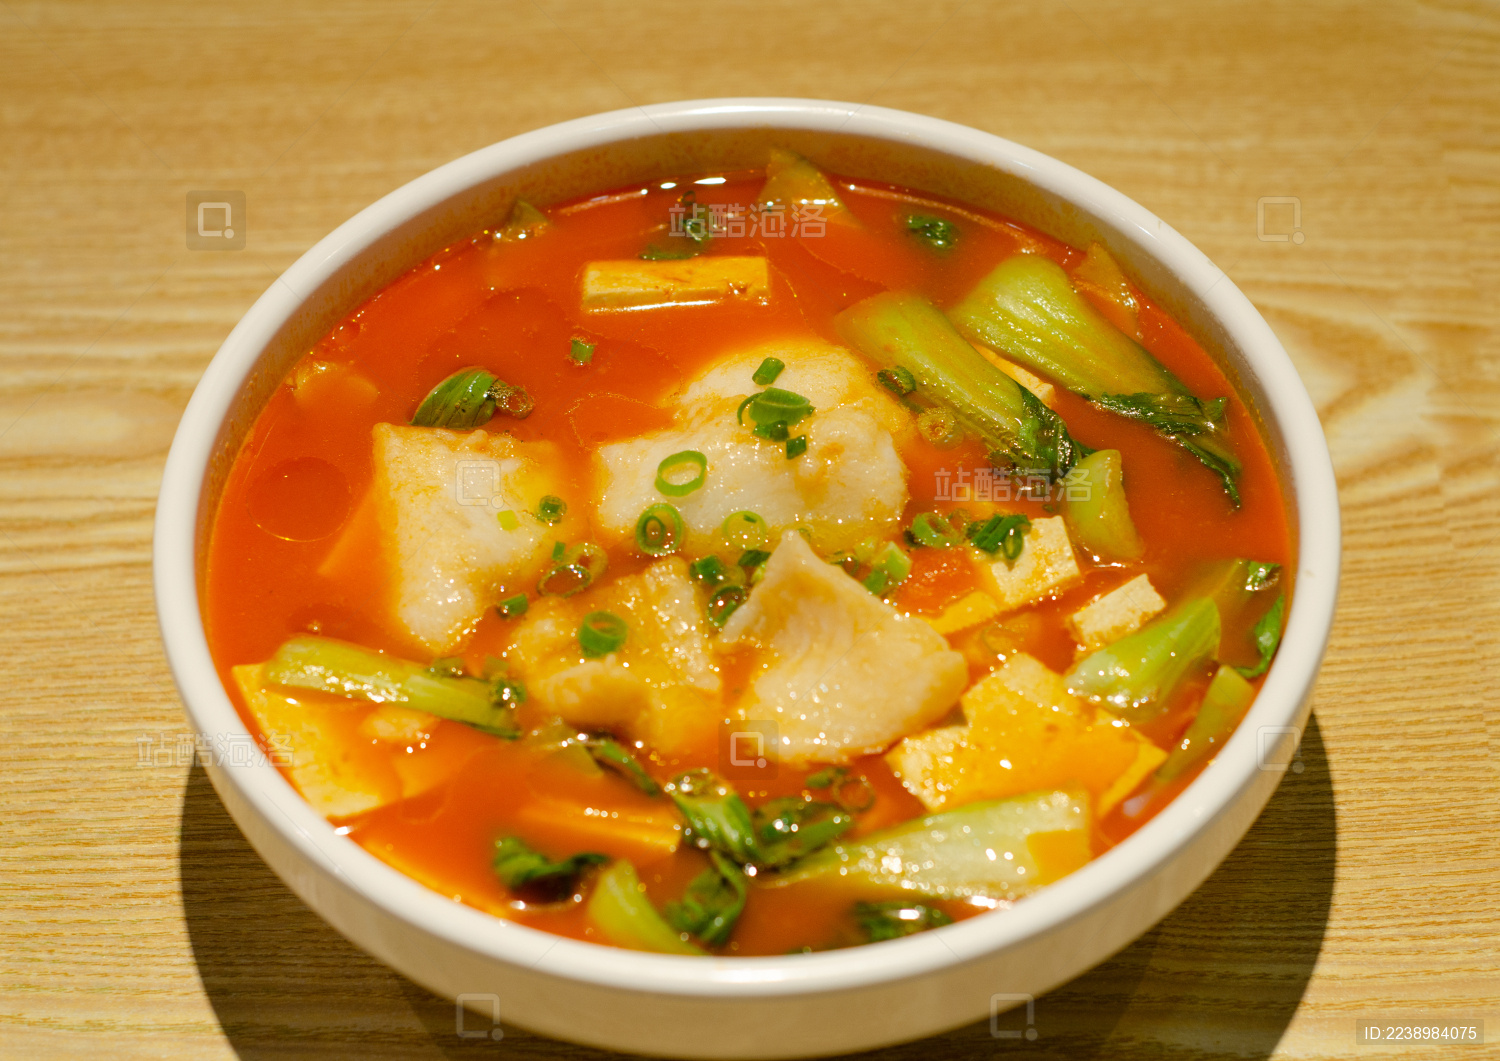 番茄鱼片汤怎么做_番茄鱼片汤的做法_爱美味的虹冰冰_豆果美食